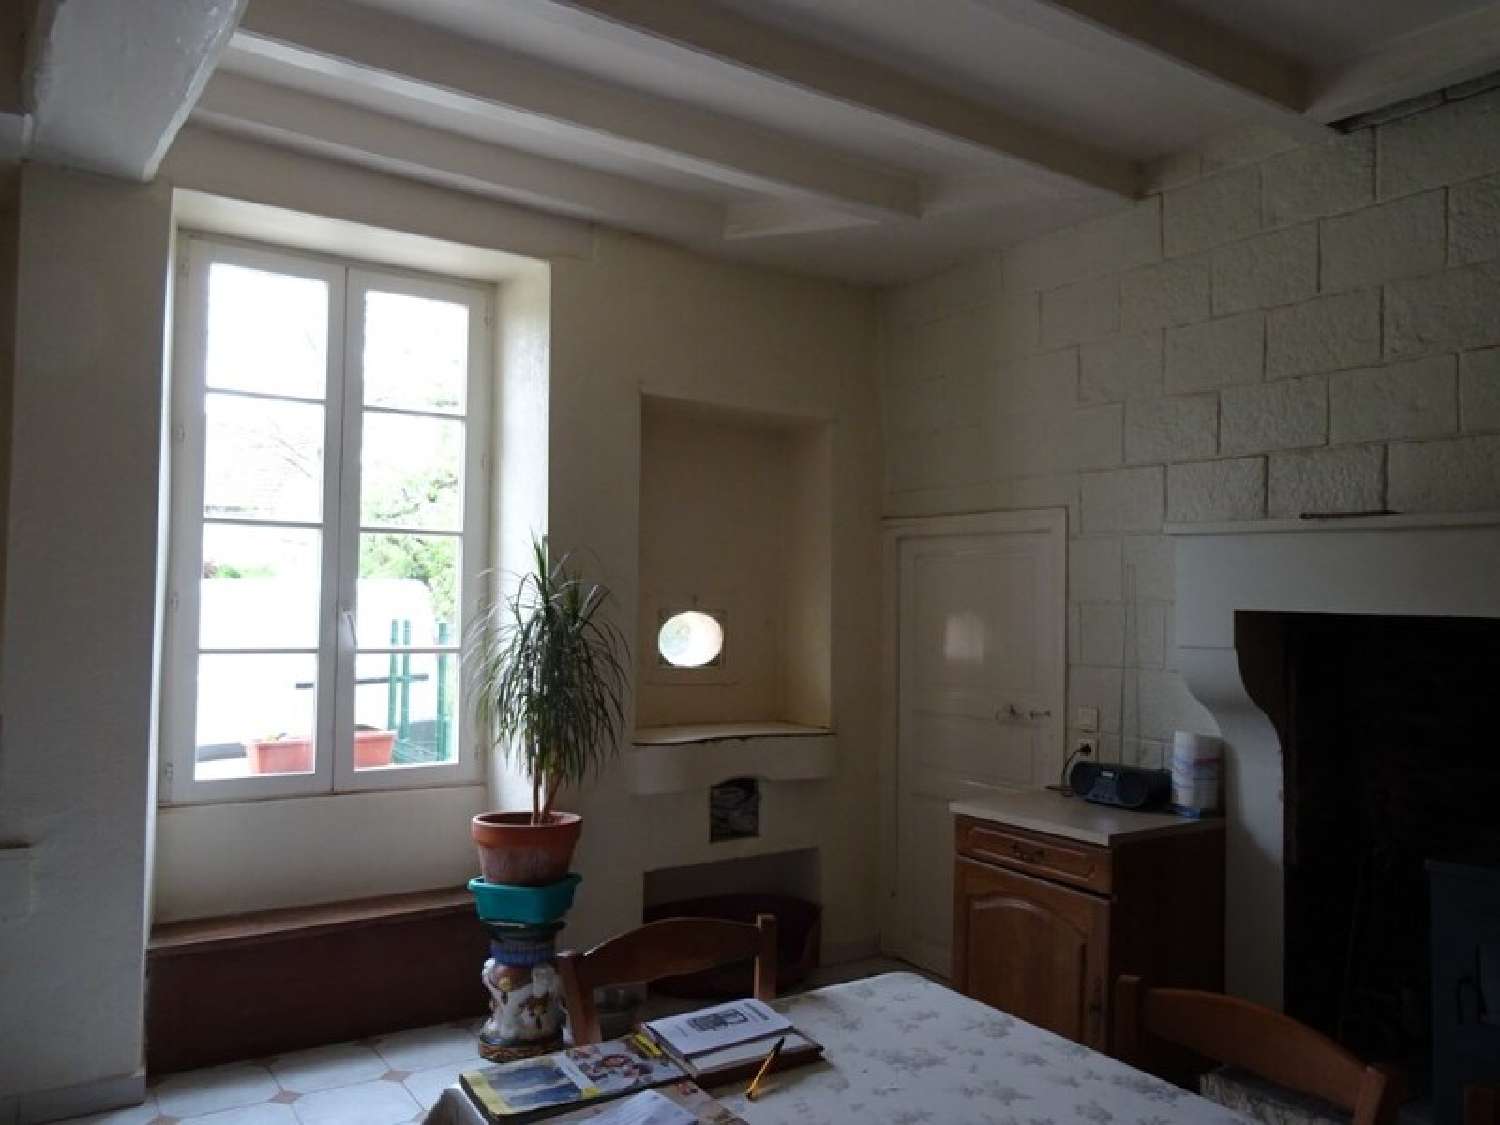  à vendre maison Montbron Charente 3